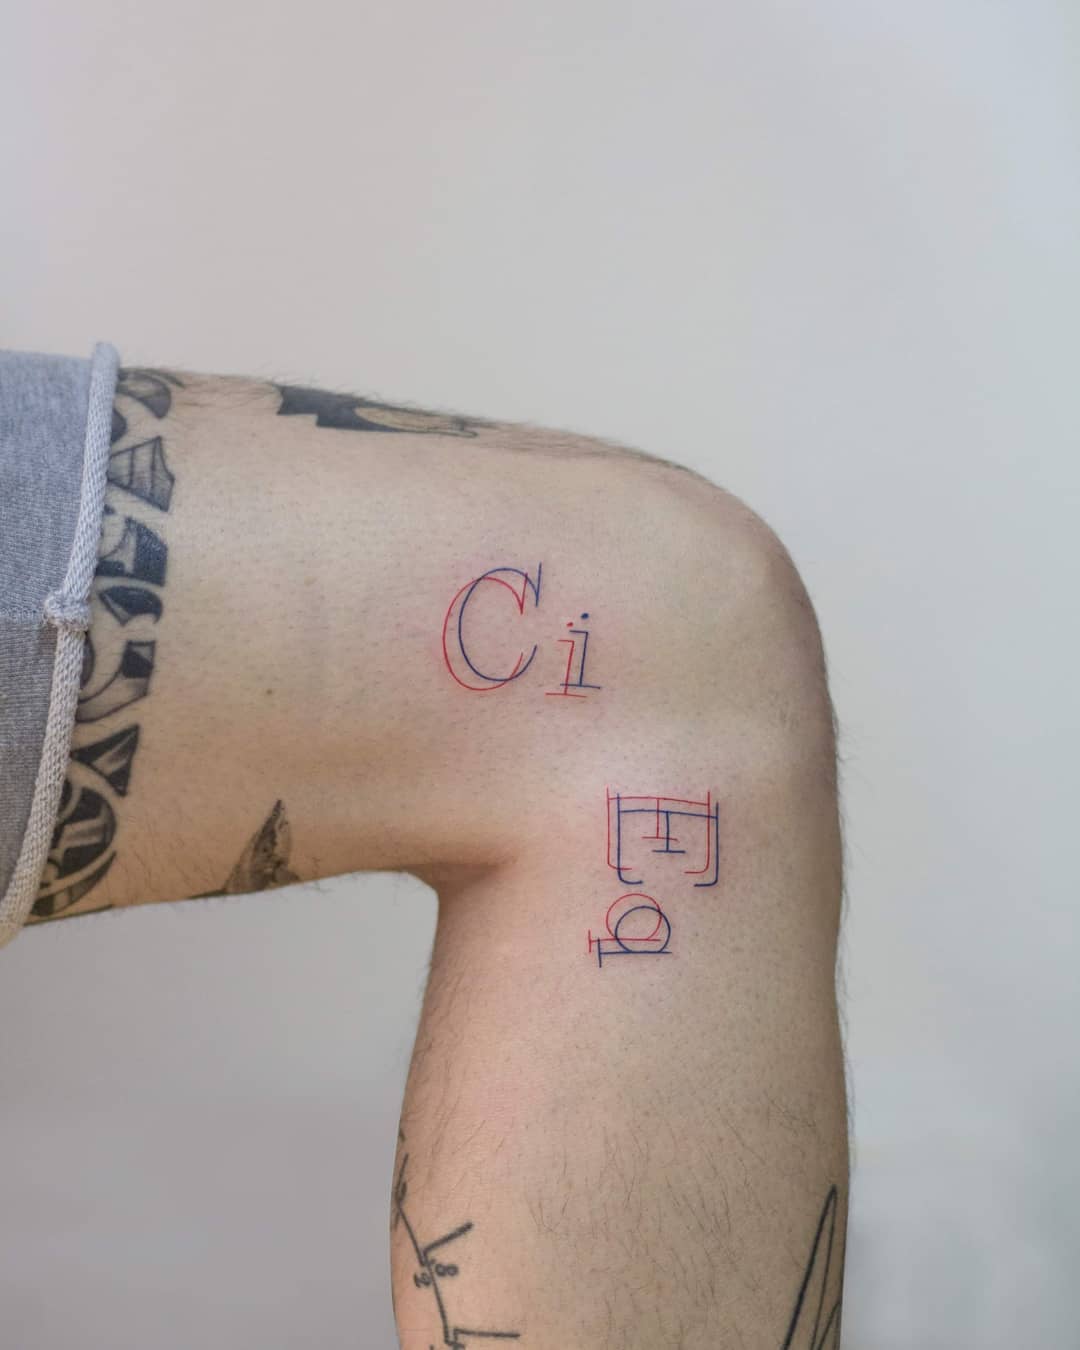 Ci Eq tattoo by tattooist Fury Art